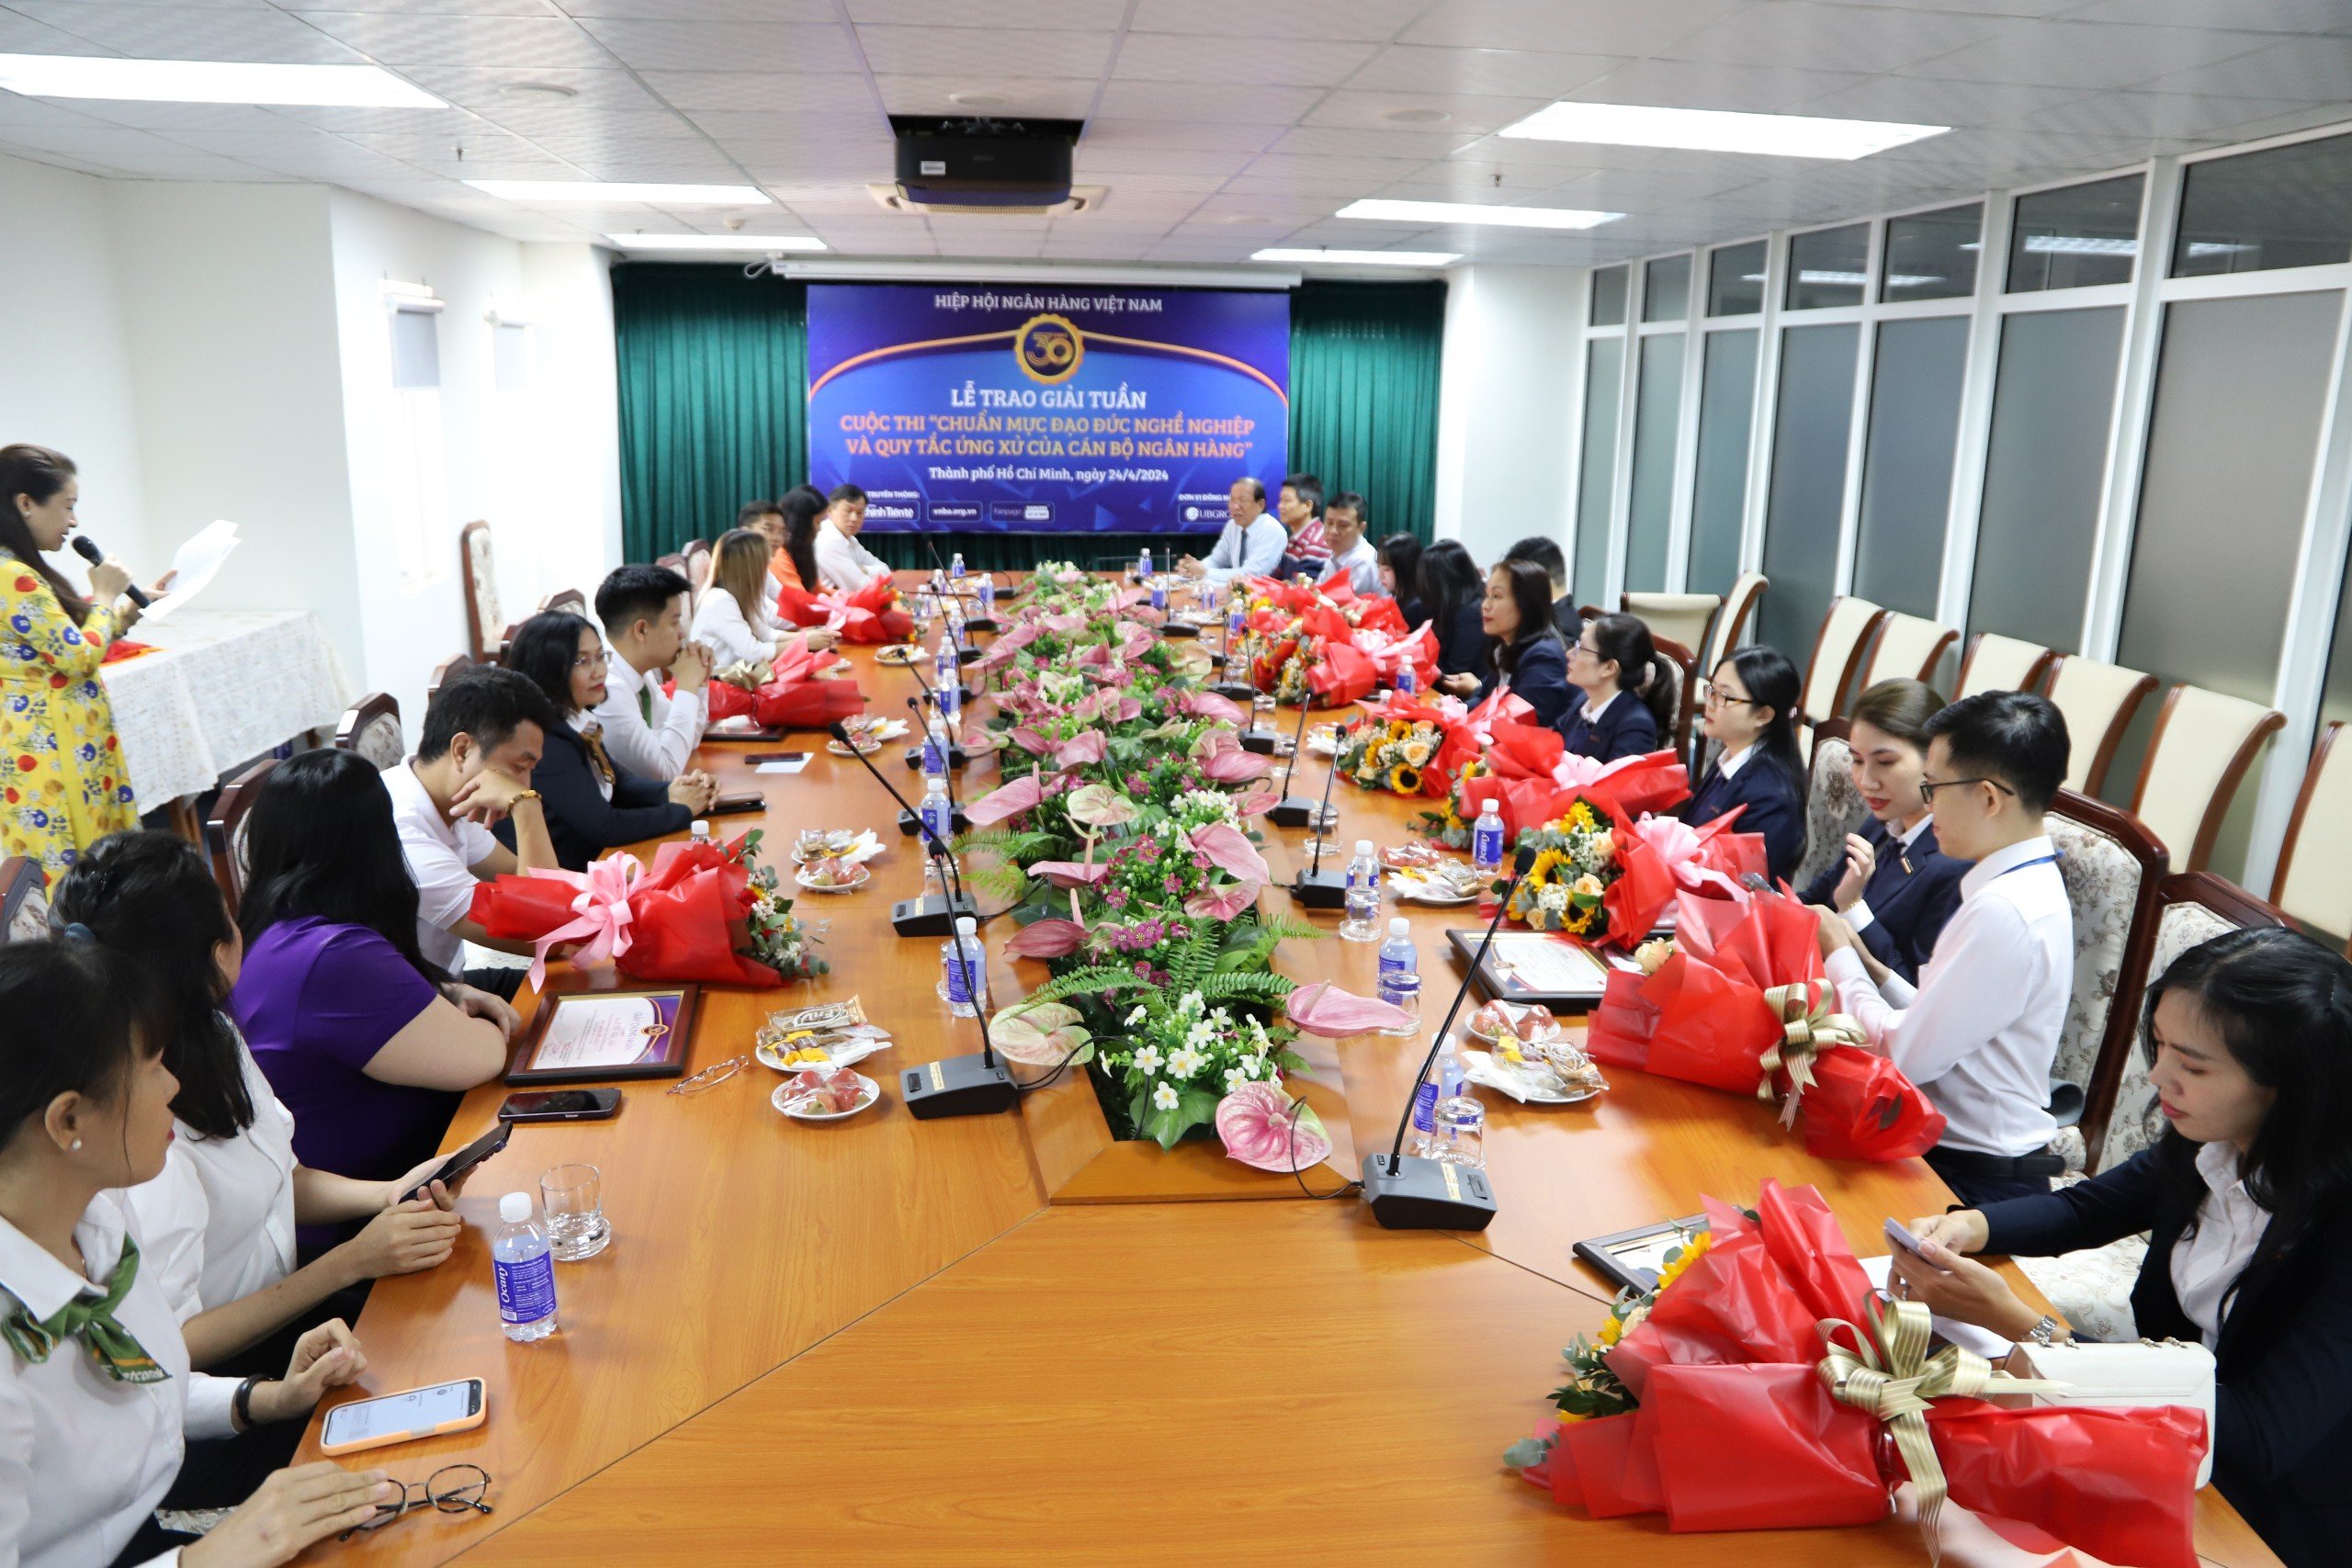 Hiệp hội Ngân hàng Việt Nam trao giải tuần Cuộc thi tại TP. Hồ Chí Minh